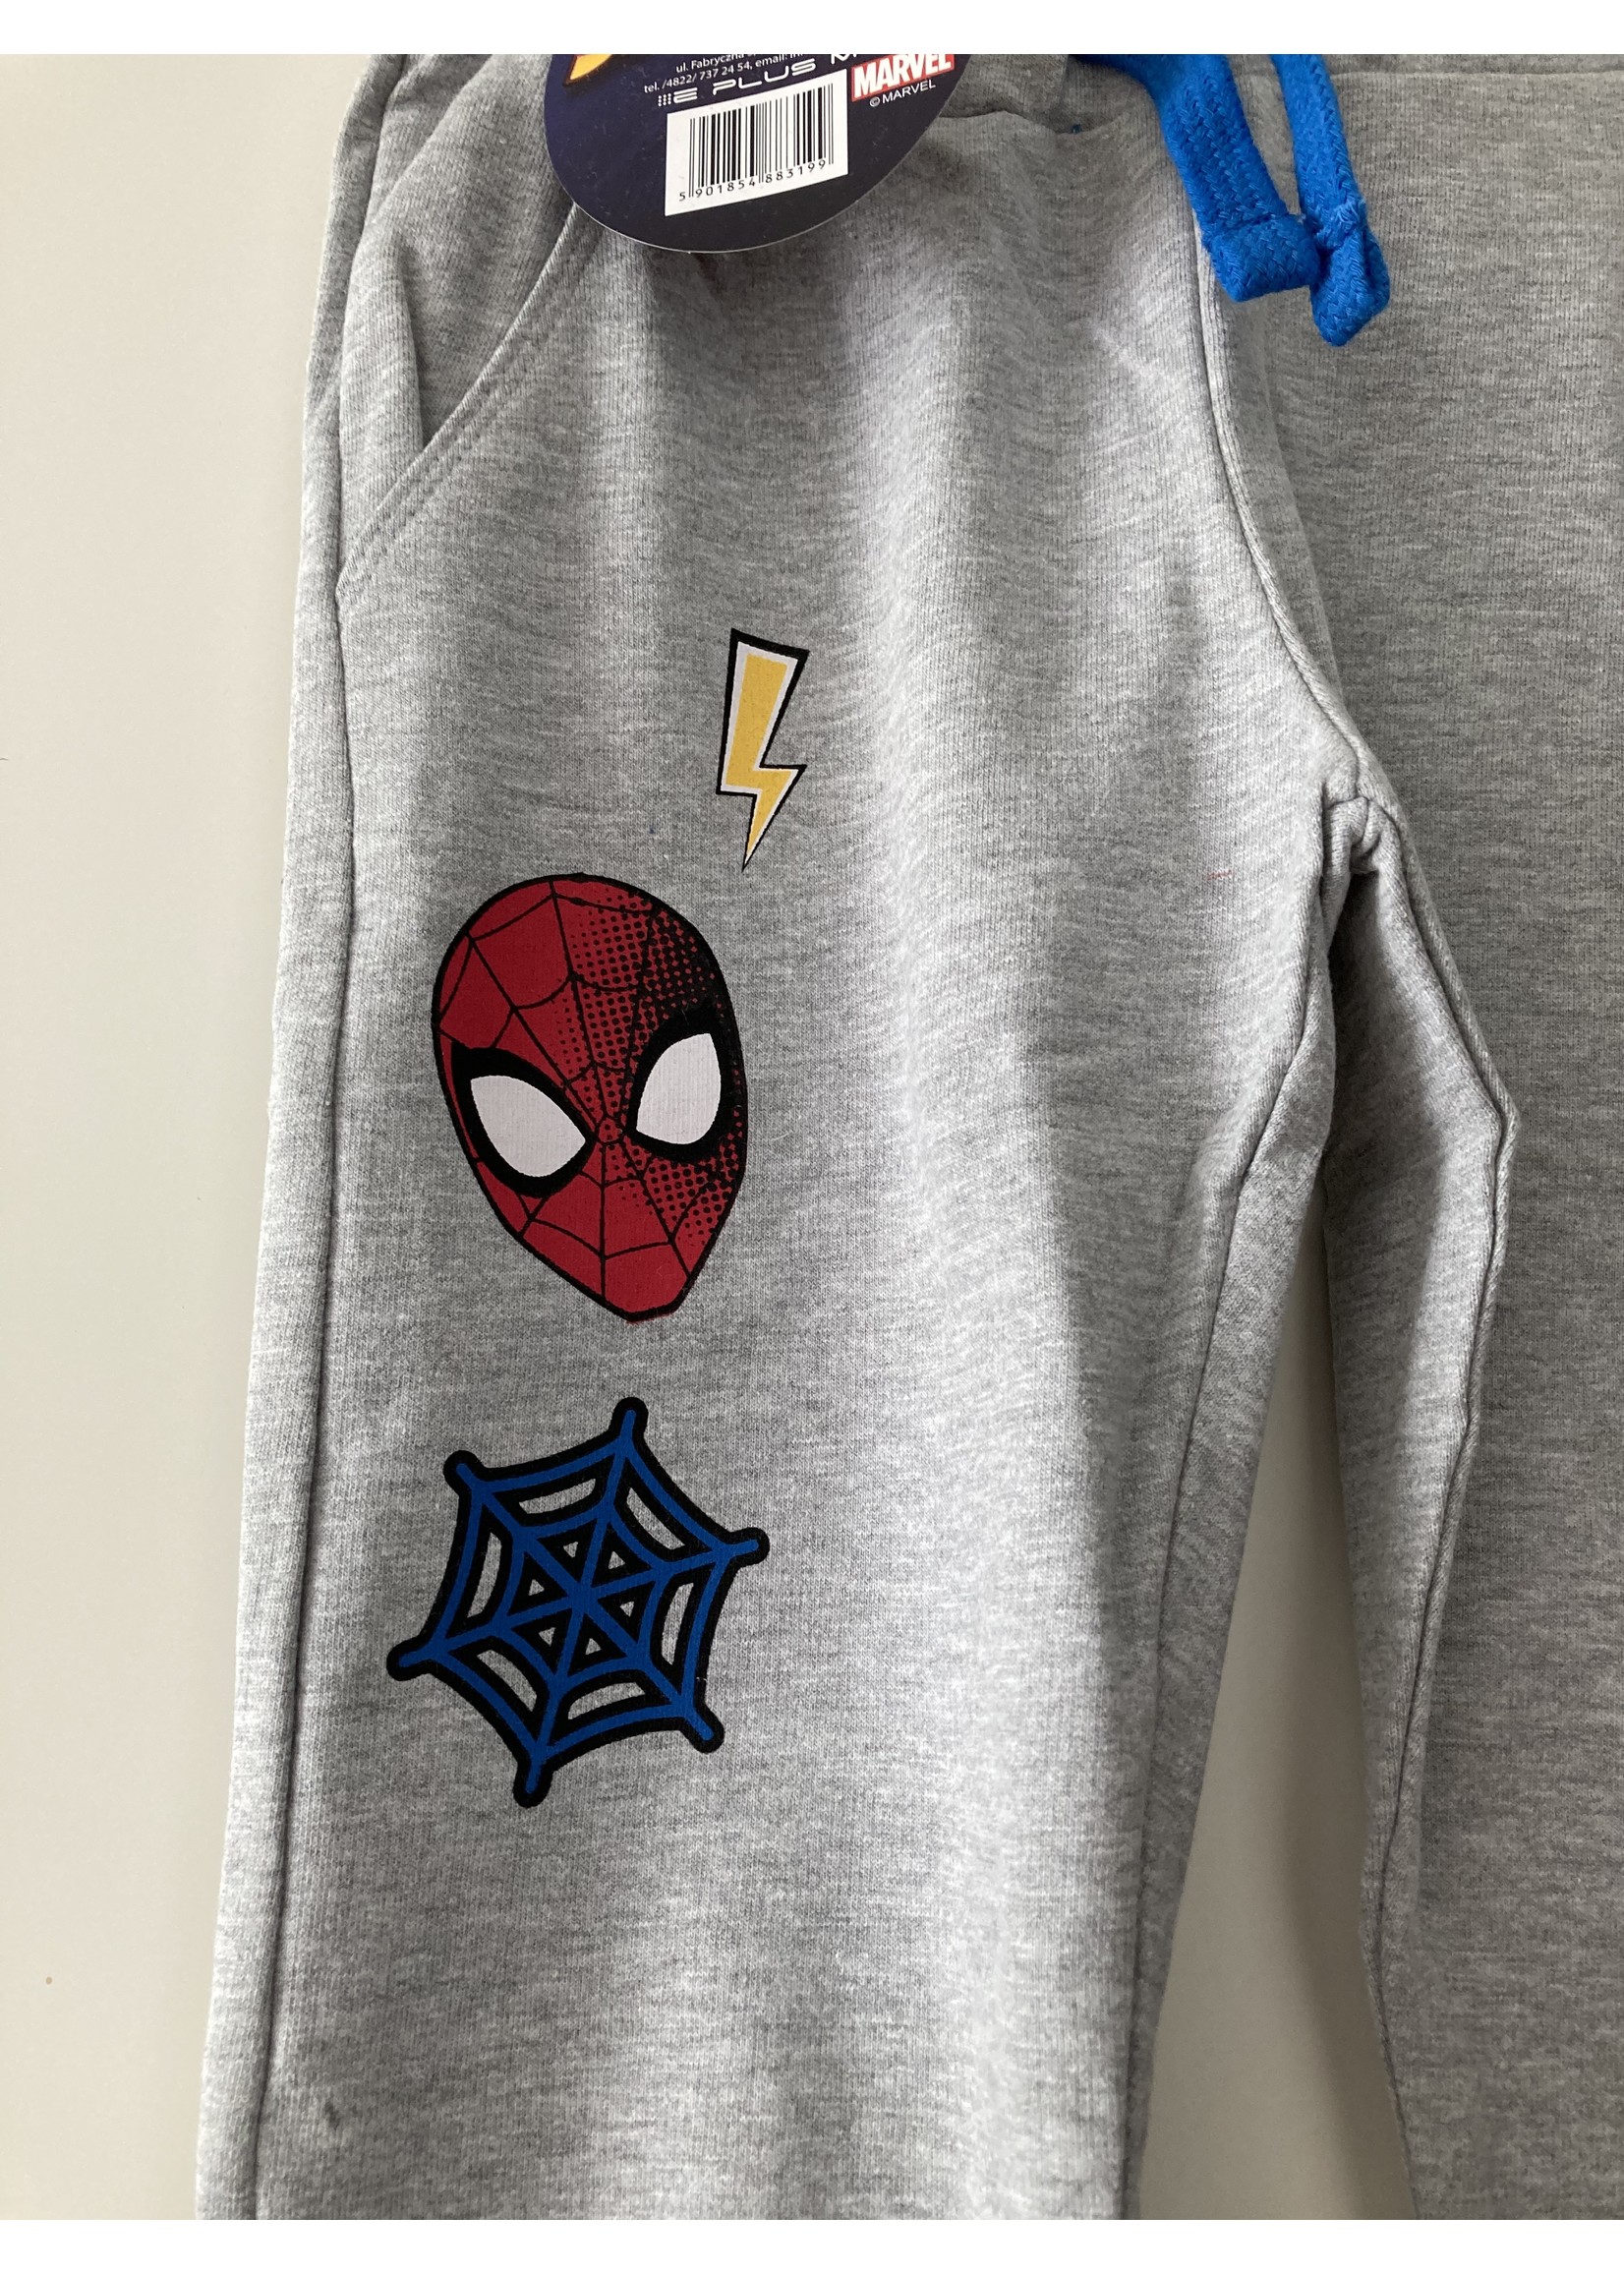 Marvel Spiderman joggingbroek van Marvel grijs